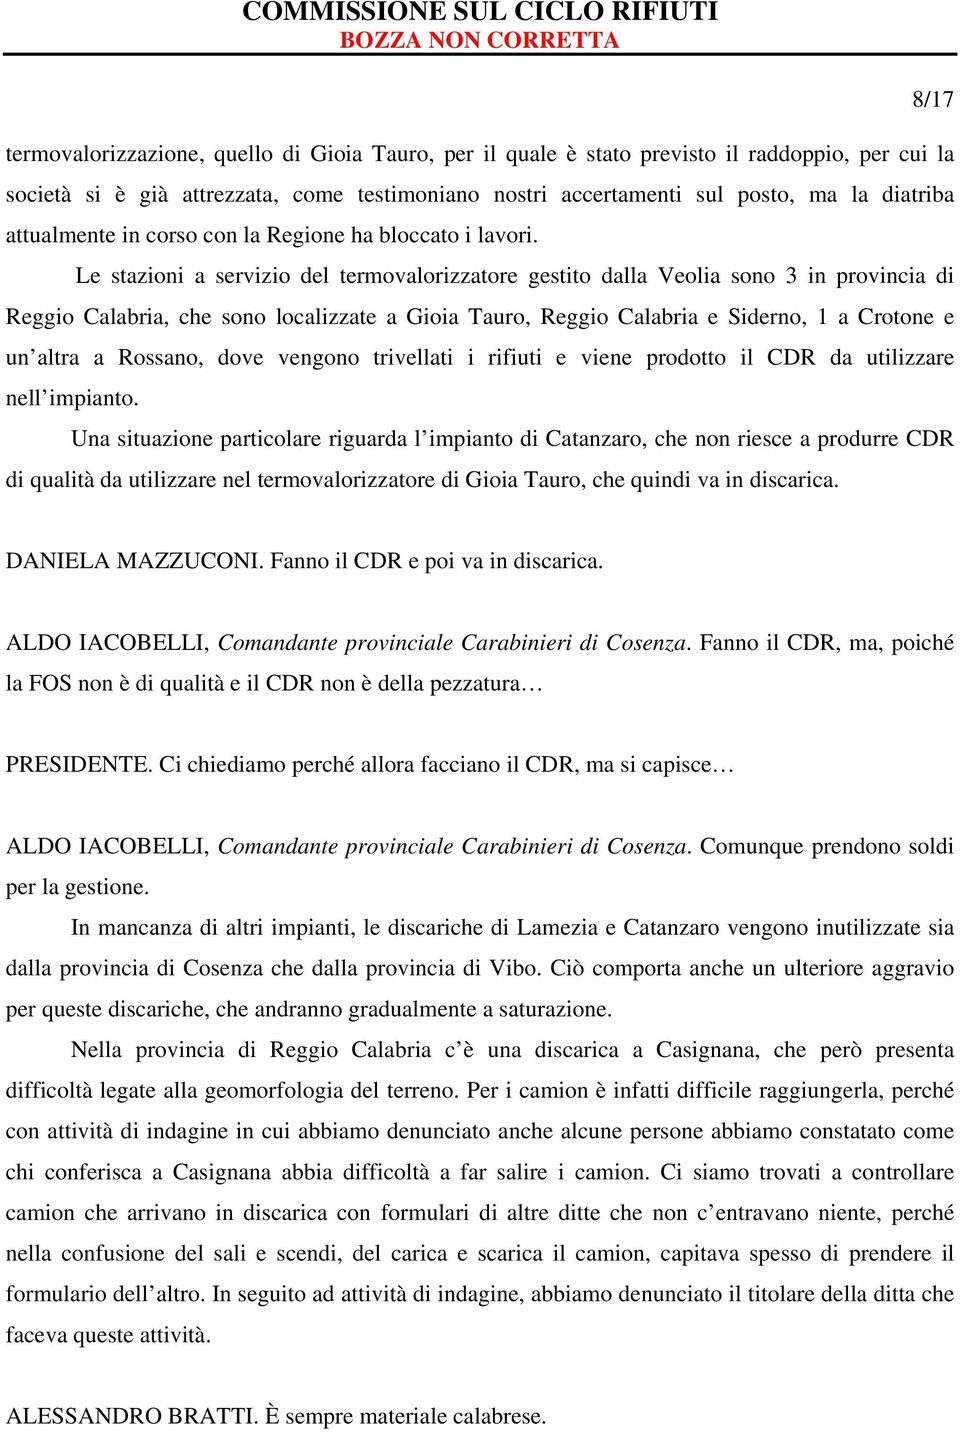 Le stazioni a servizio del termovalorizzatore gestito dalla Veolia sono 3 in provincia di Reggio Calabria, che sono localizzate a Gioia Tauro, Reggio Calabria e Siderno, 1 a Crotone e un altra a